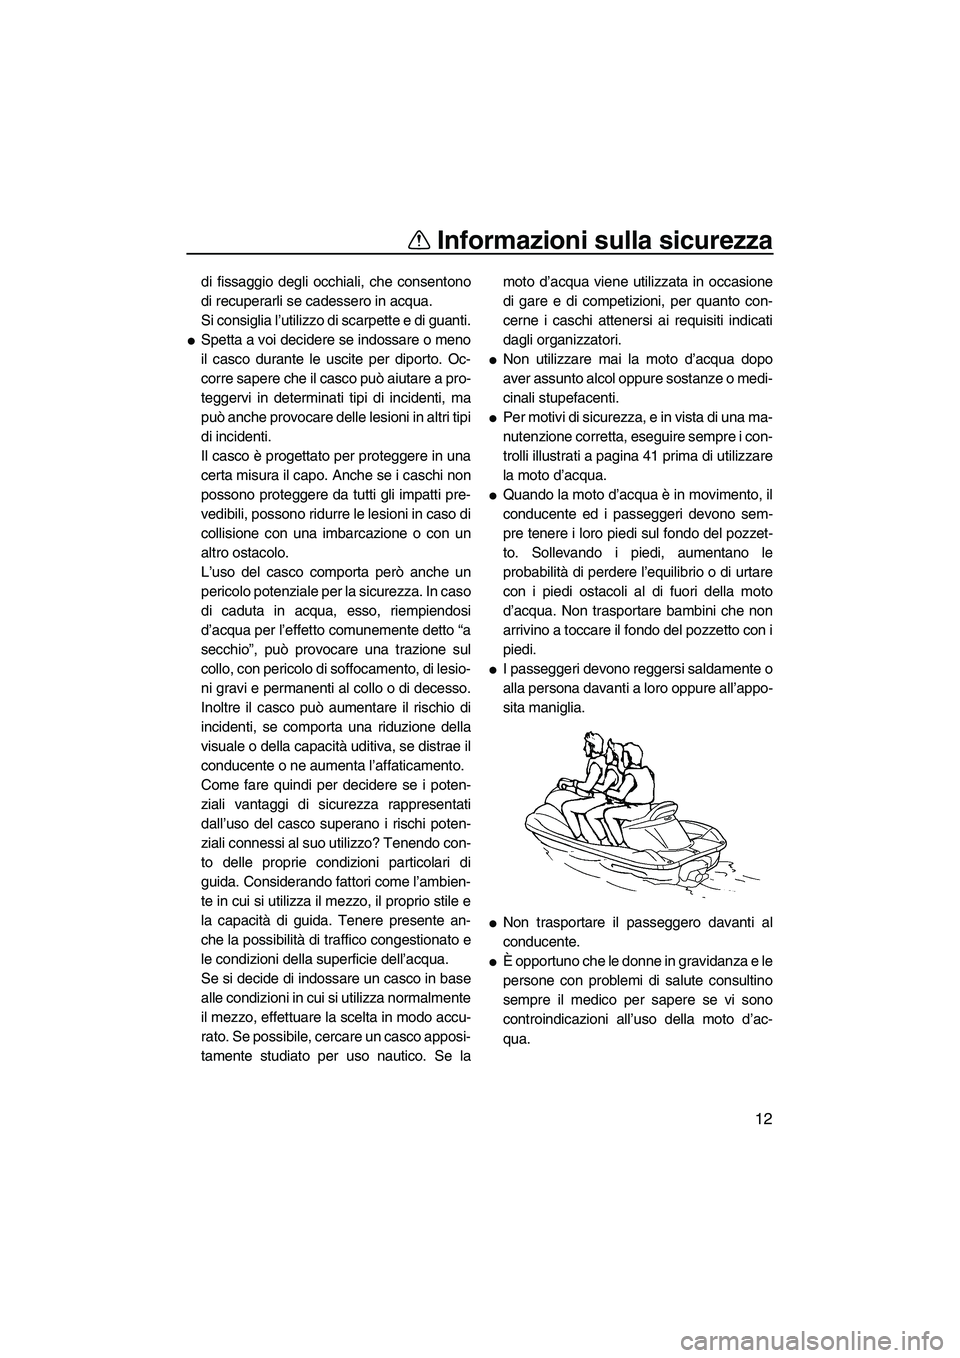 YAMAHA VX 2009  Manuale duso (in Italian) Informazioni sulla sicurezza
12
di fissaggio degli occhiali, che consentono
di recuperarli se cadessero in acqua.
Si consiglia l’utilizzo di scarpette e di guanti.
Spetta a voi decidere se indossar